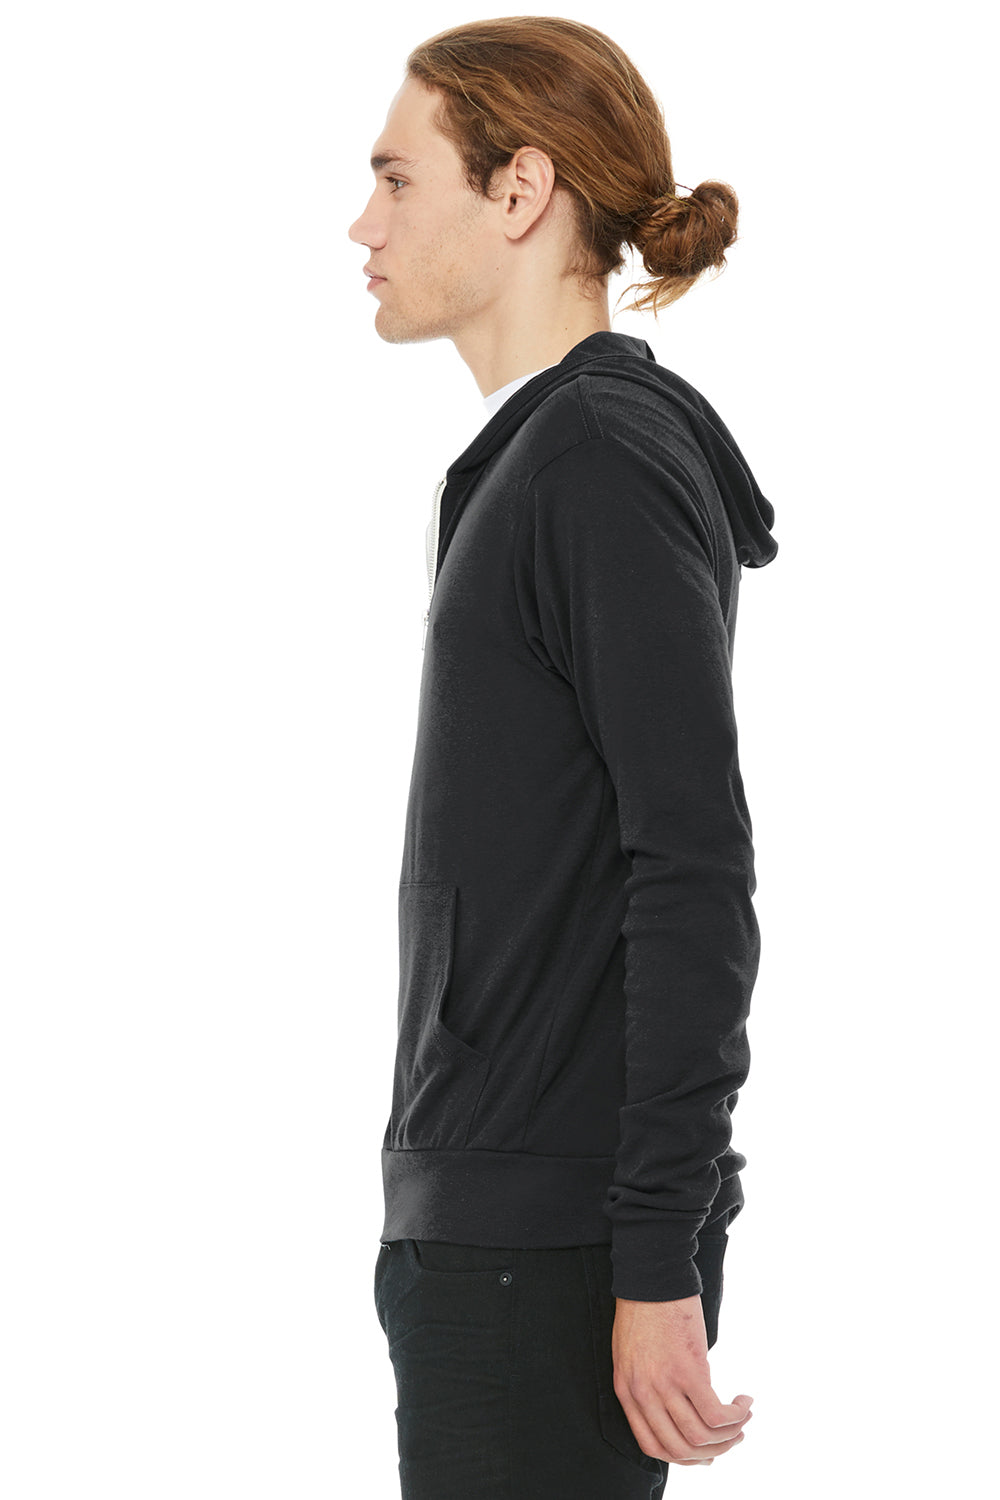 Bella + Canvas BC3939/3939 Mens Full Zip Long Sleeve Hooded T-Shirt Hoodie Solid Dark Grey Model Side